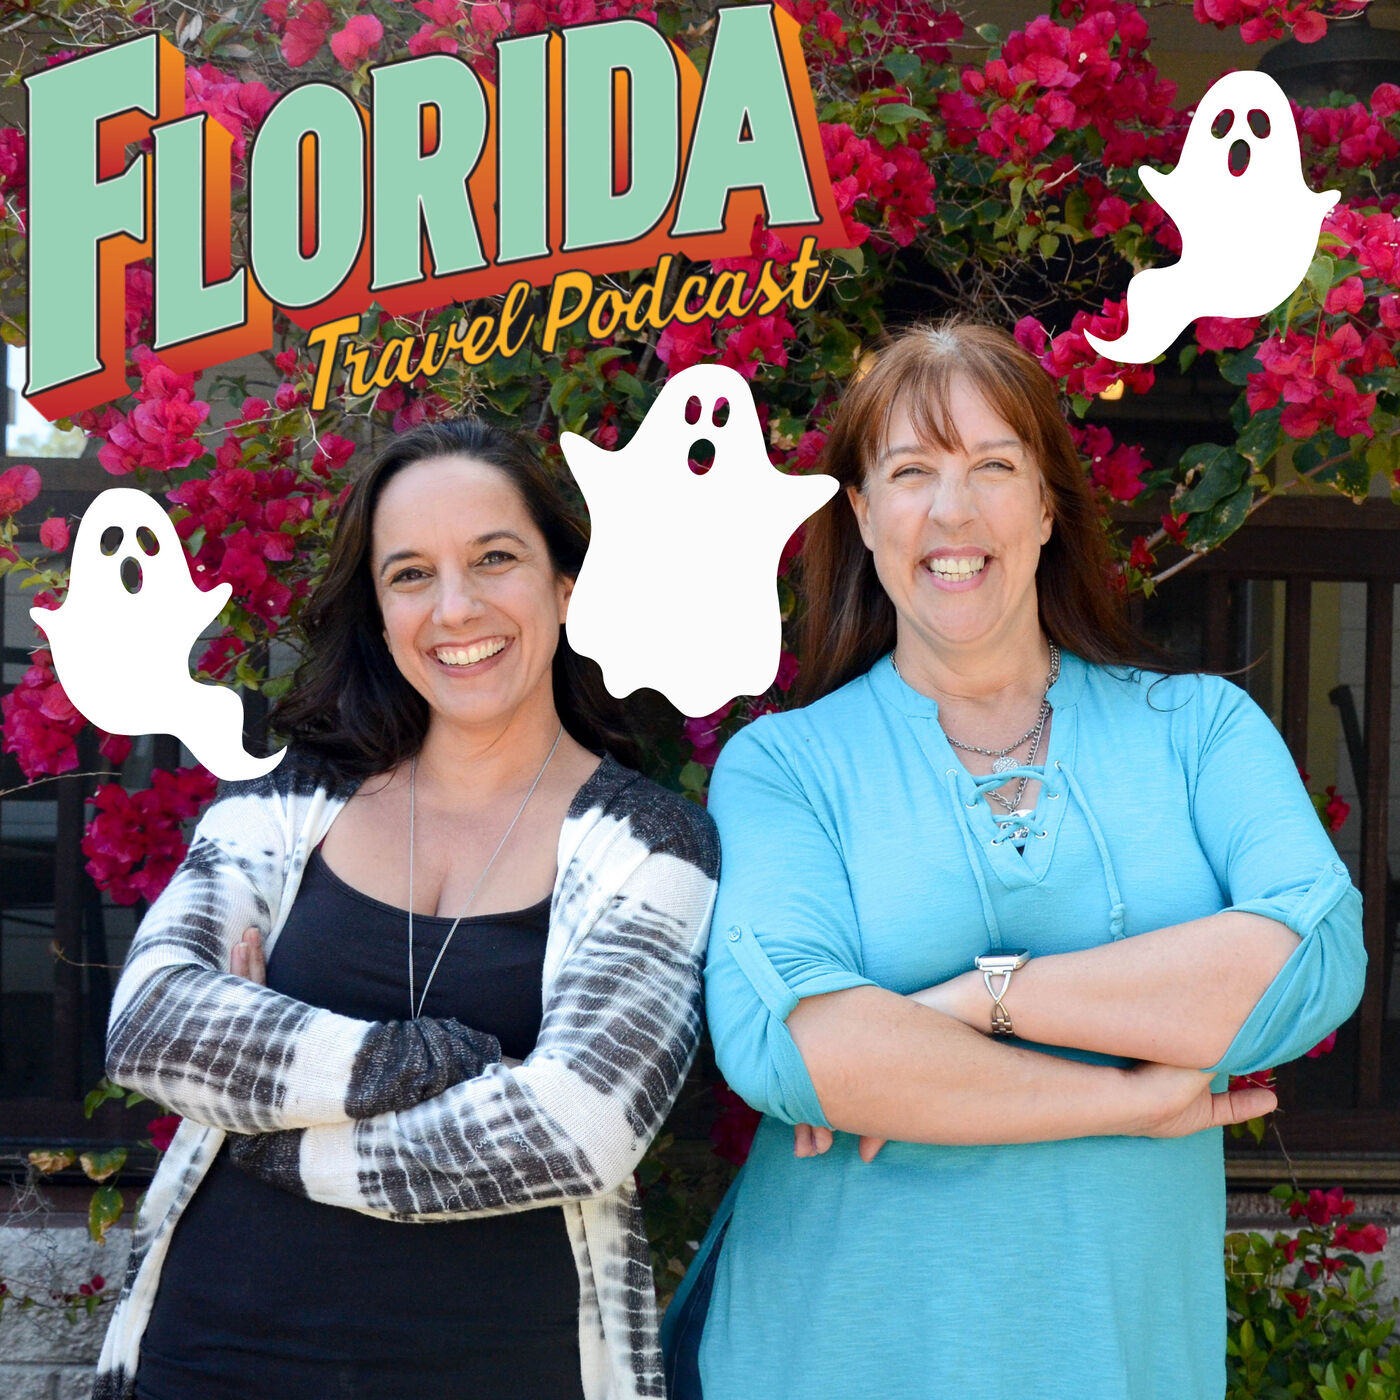 Artwork for podcast Florida Travel Pod